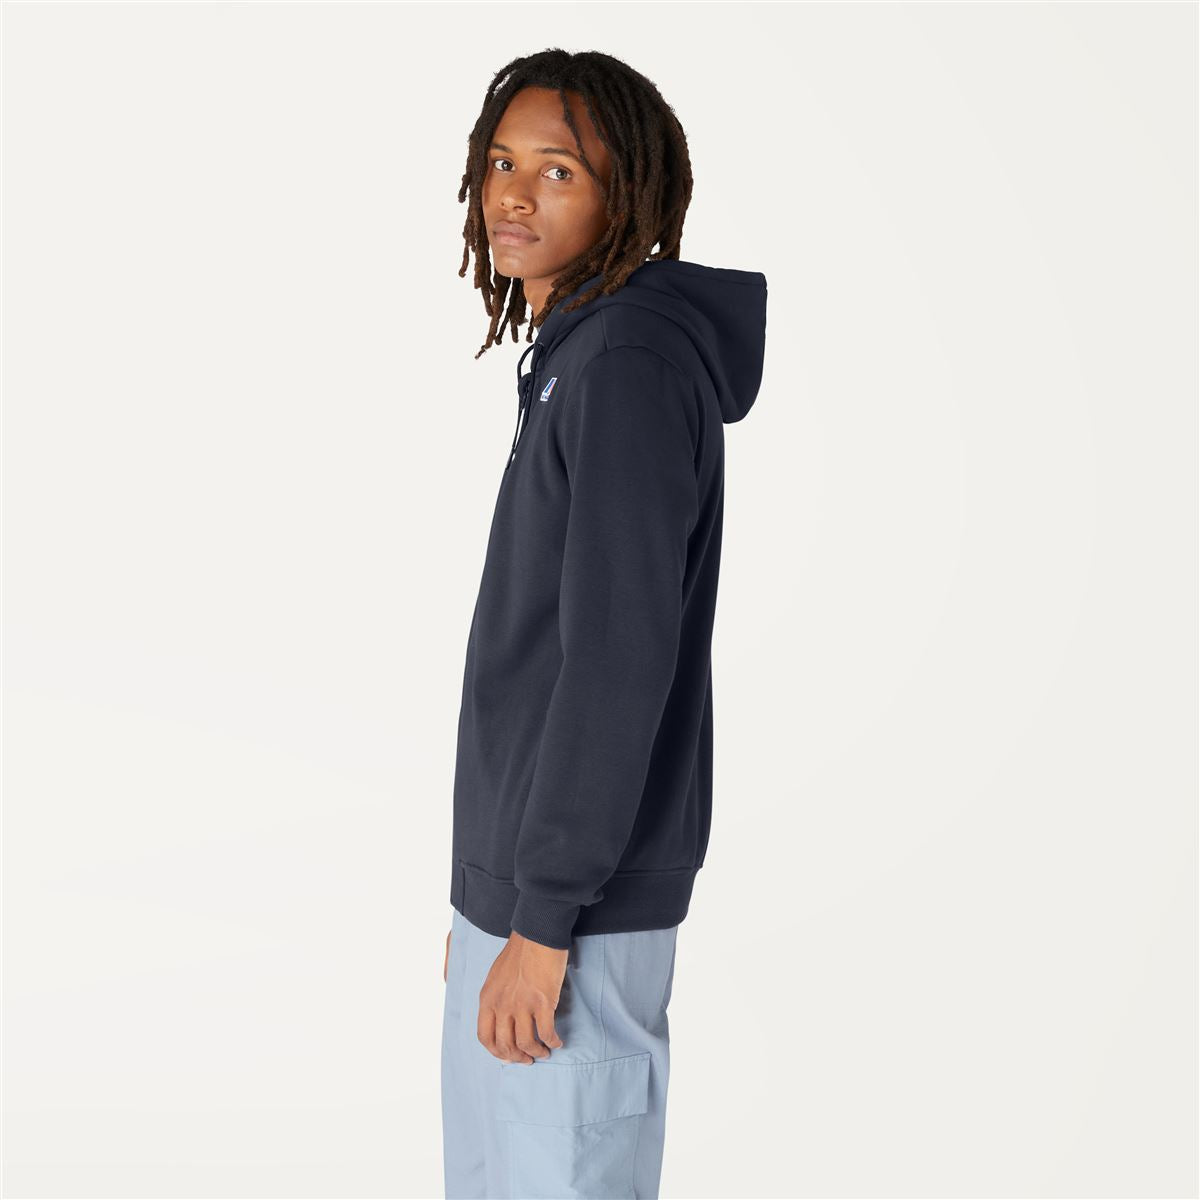 Arnel - Unisex Hooded Fleece Sweatshirt in Blue Depht